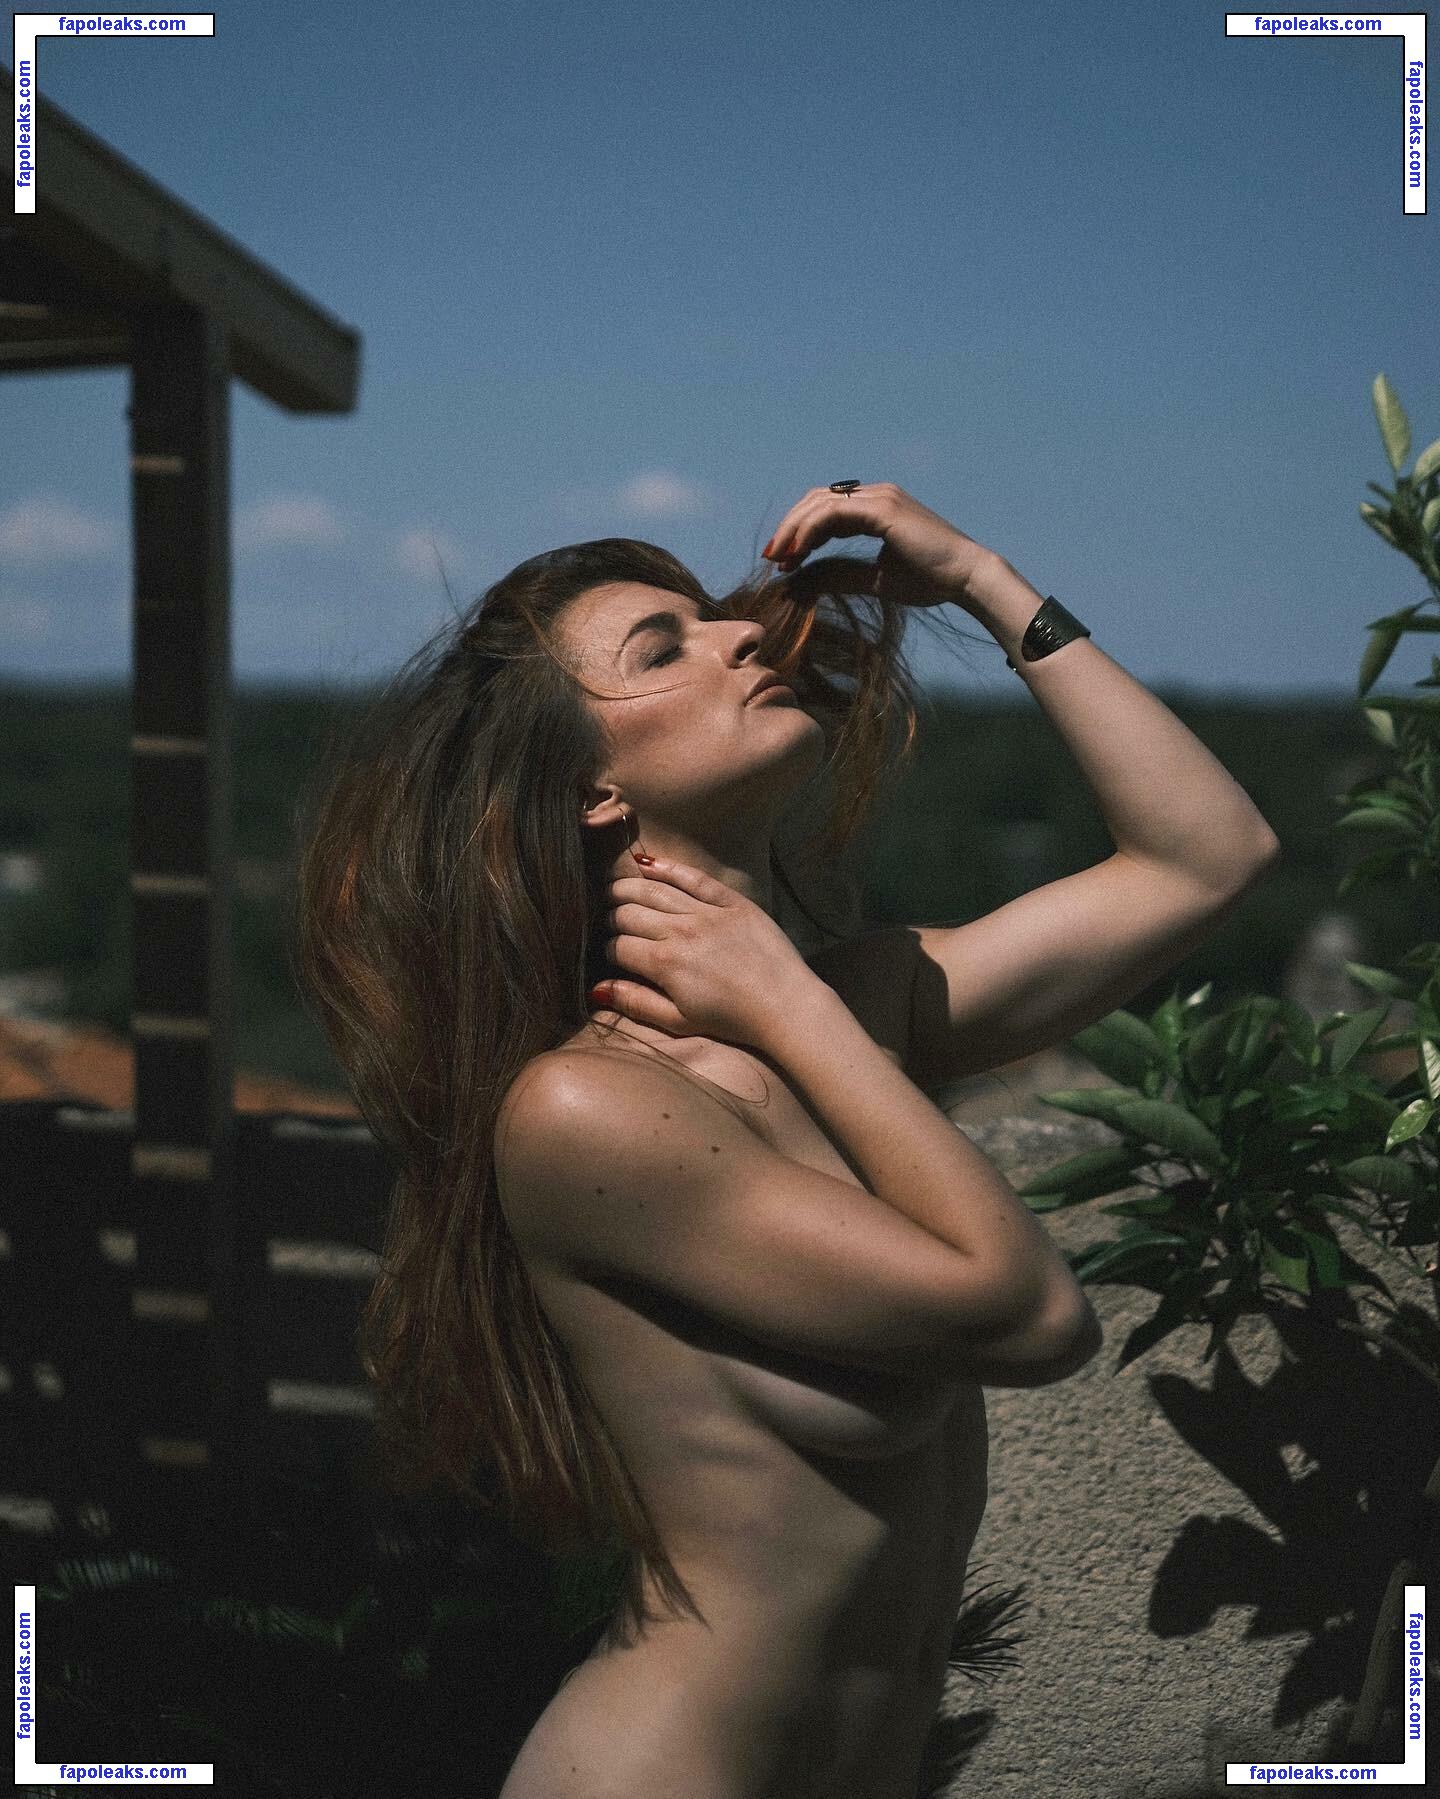 Chloe Bonhaure / chloebonhaure / chloewildd nude photo #0038 from OnlyFans